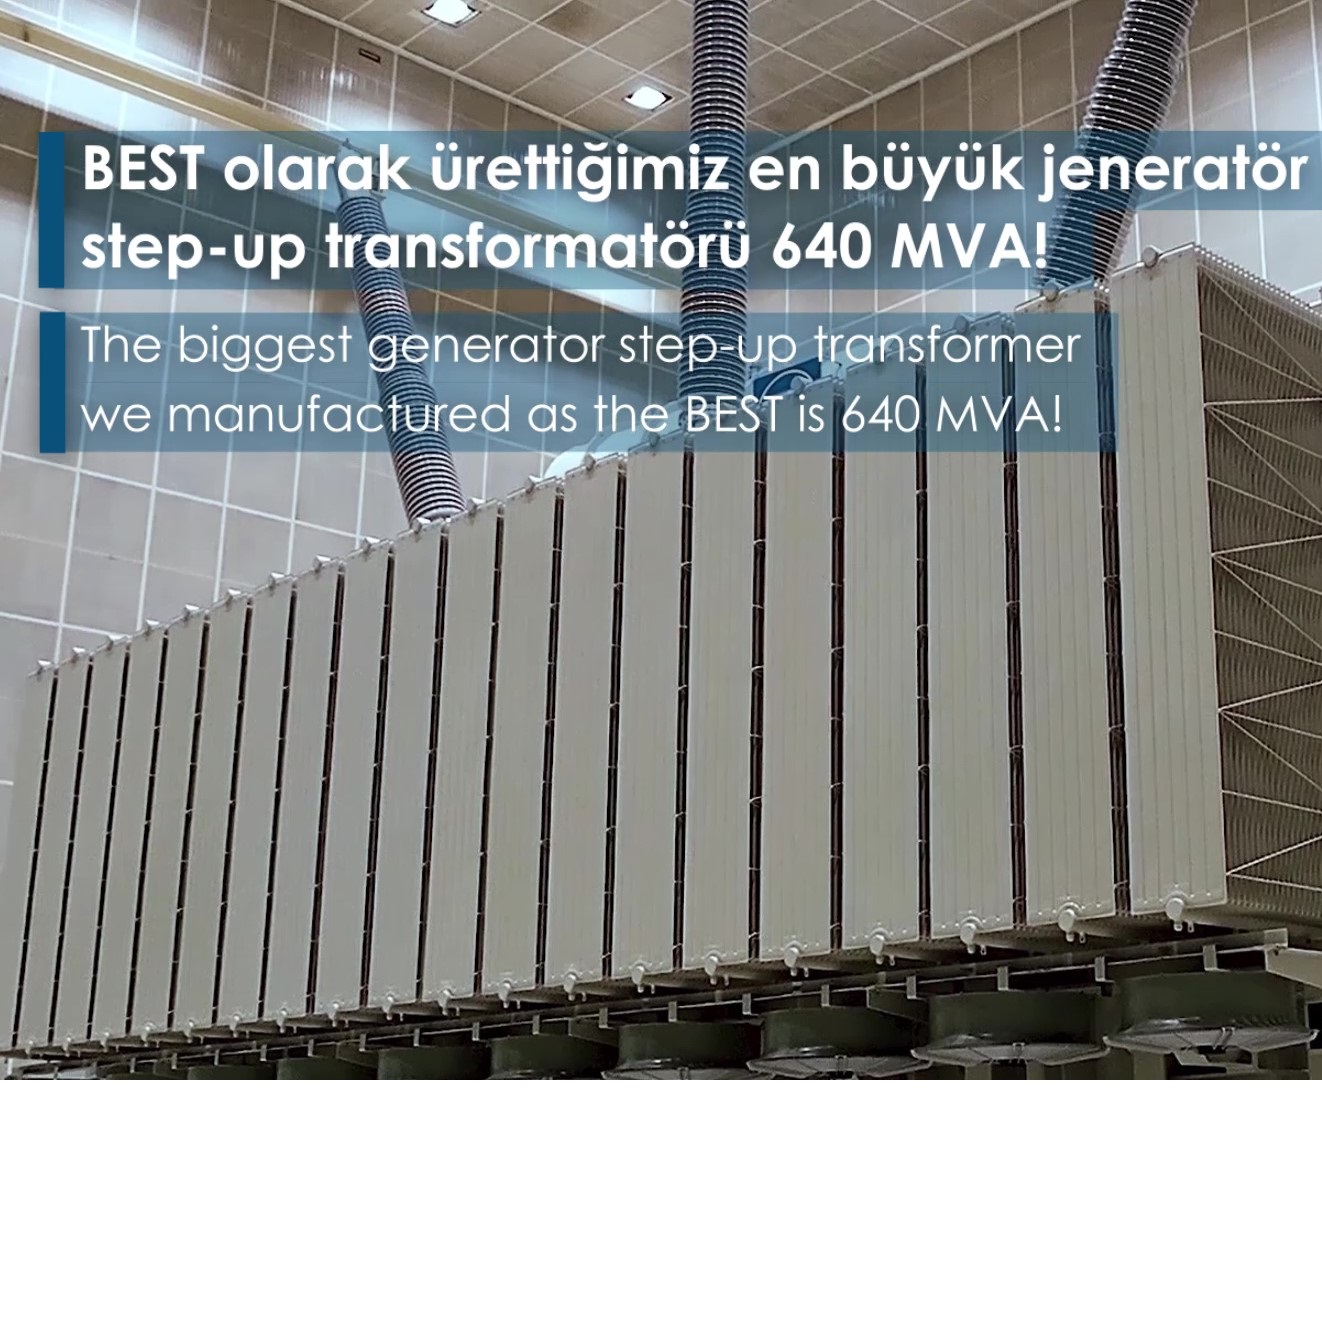 640 MVA Şirket Rekoru Step-Up Transformatörümüz